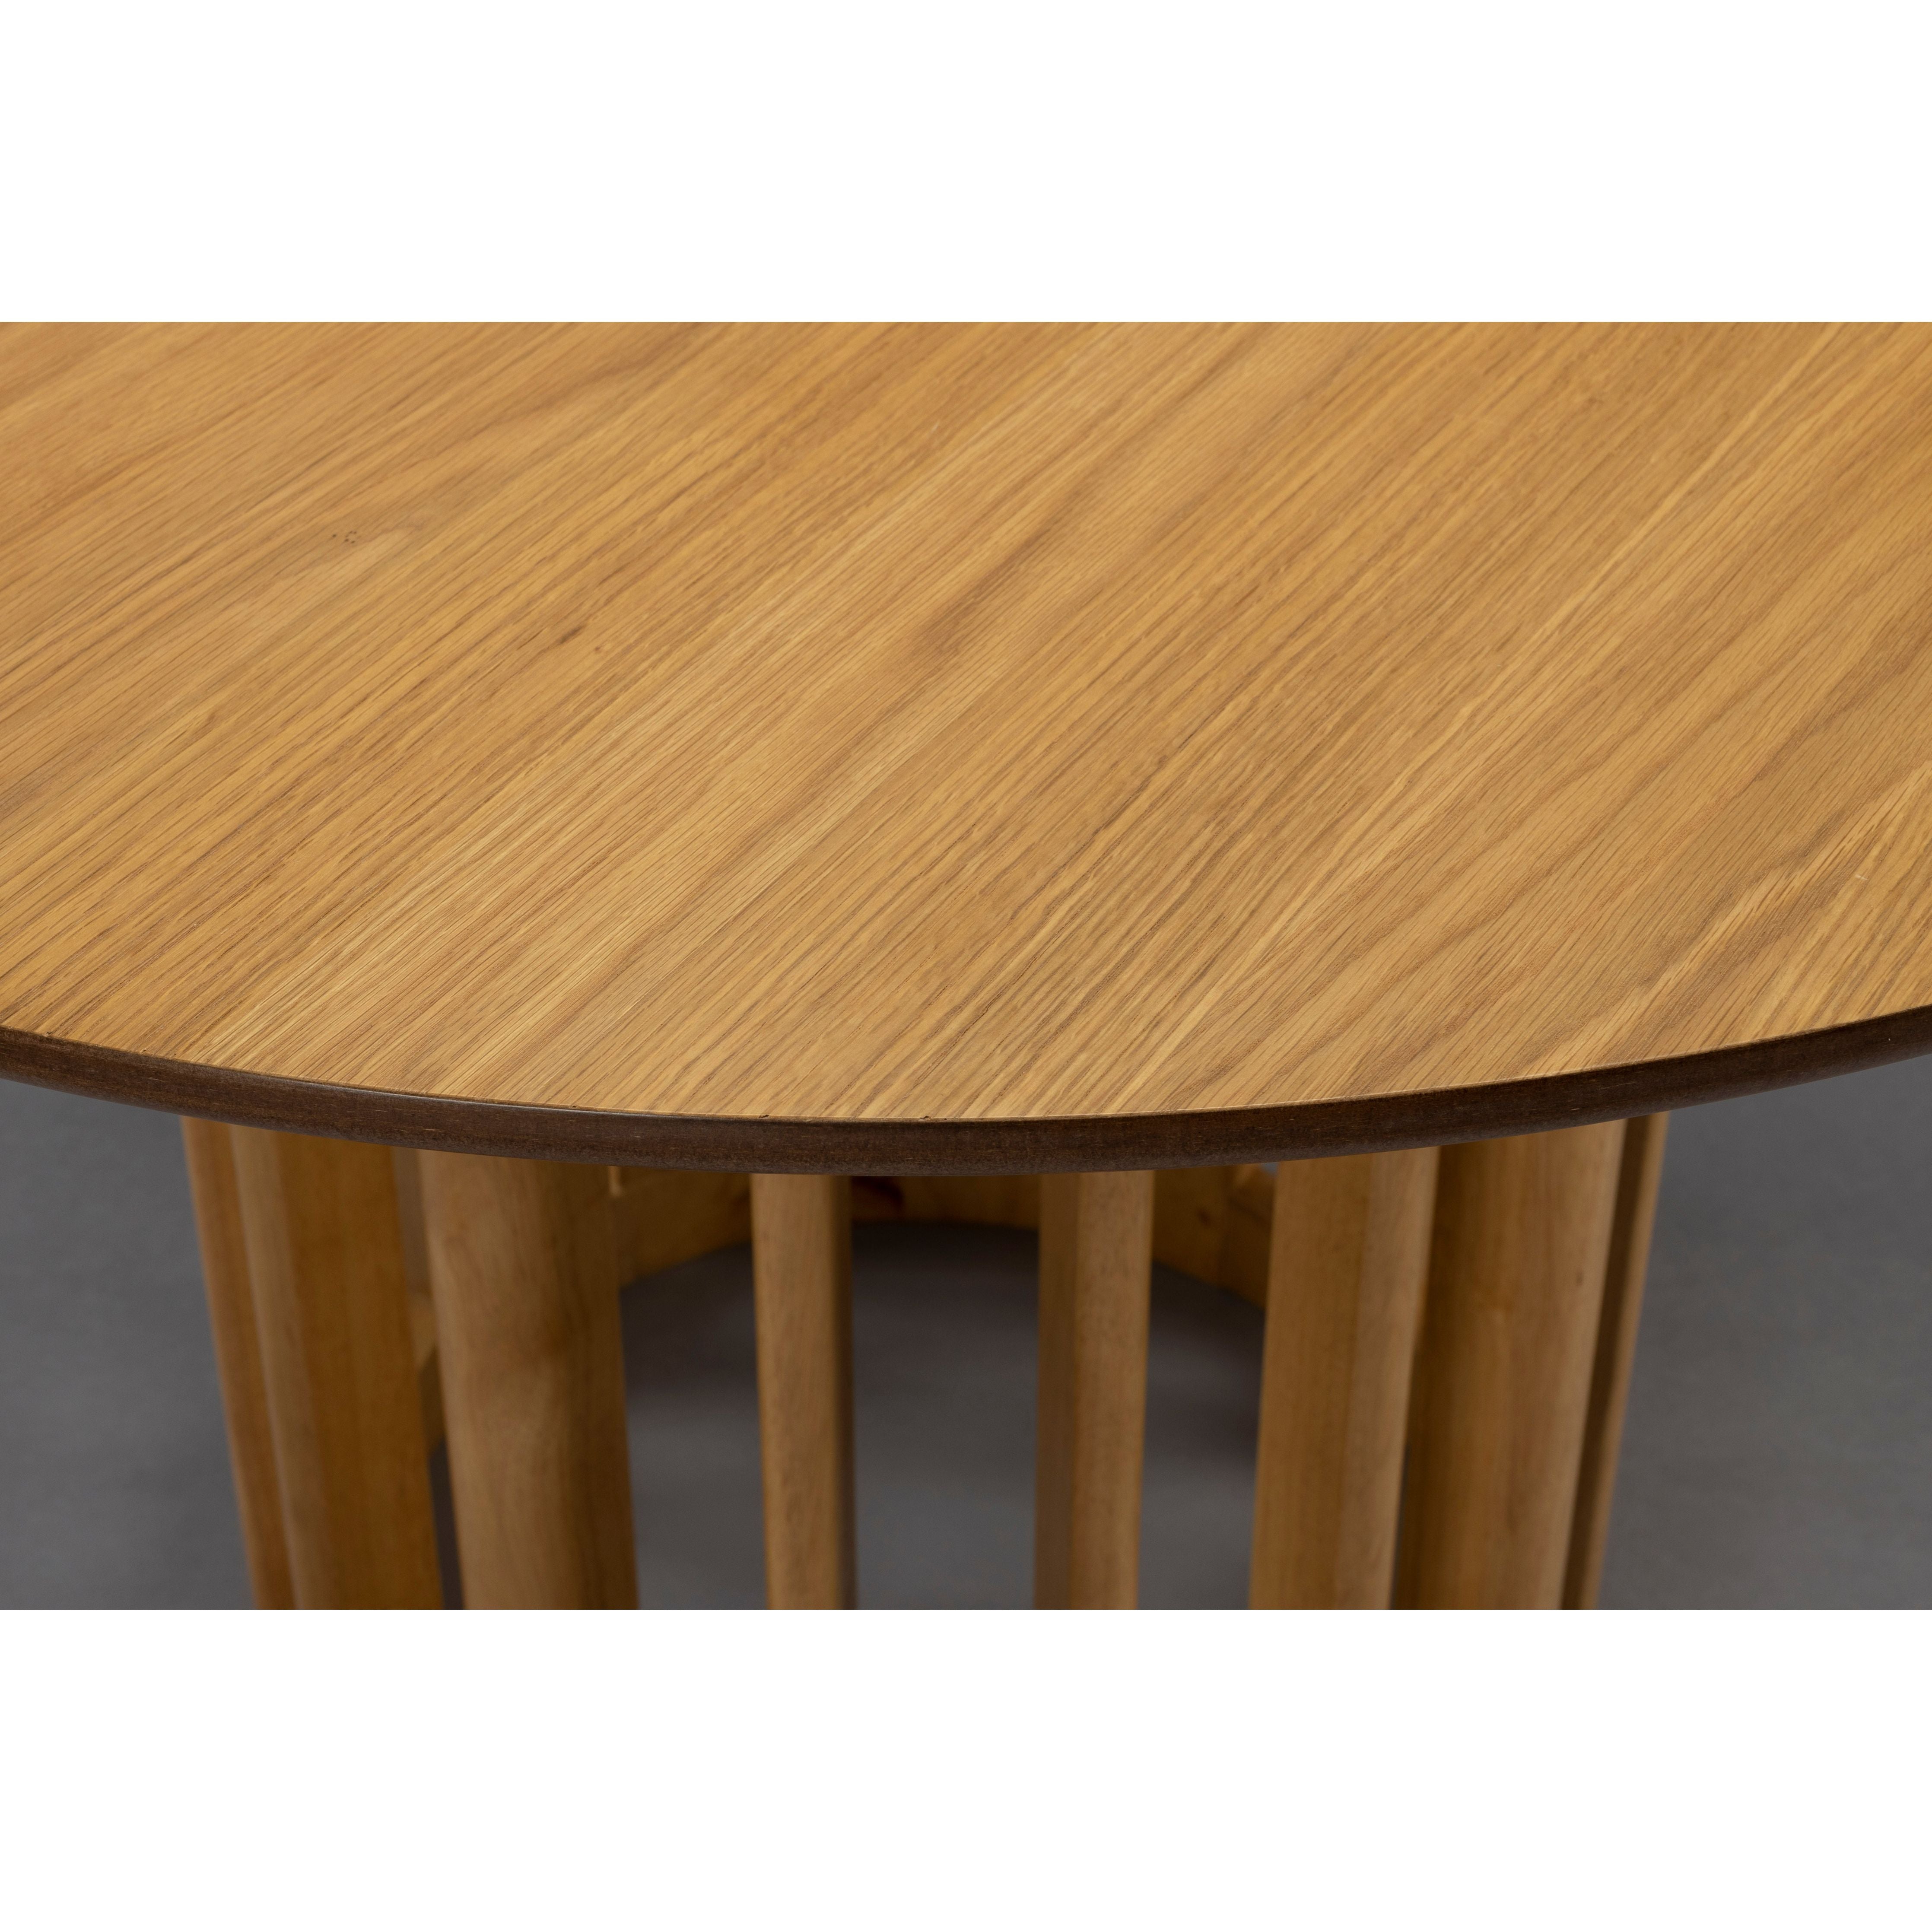 Table barlet oak